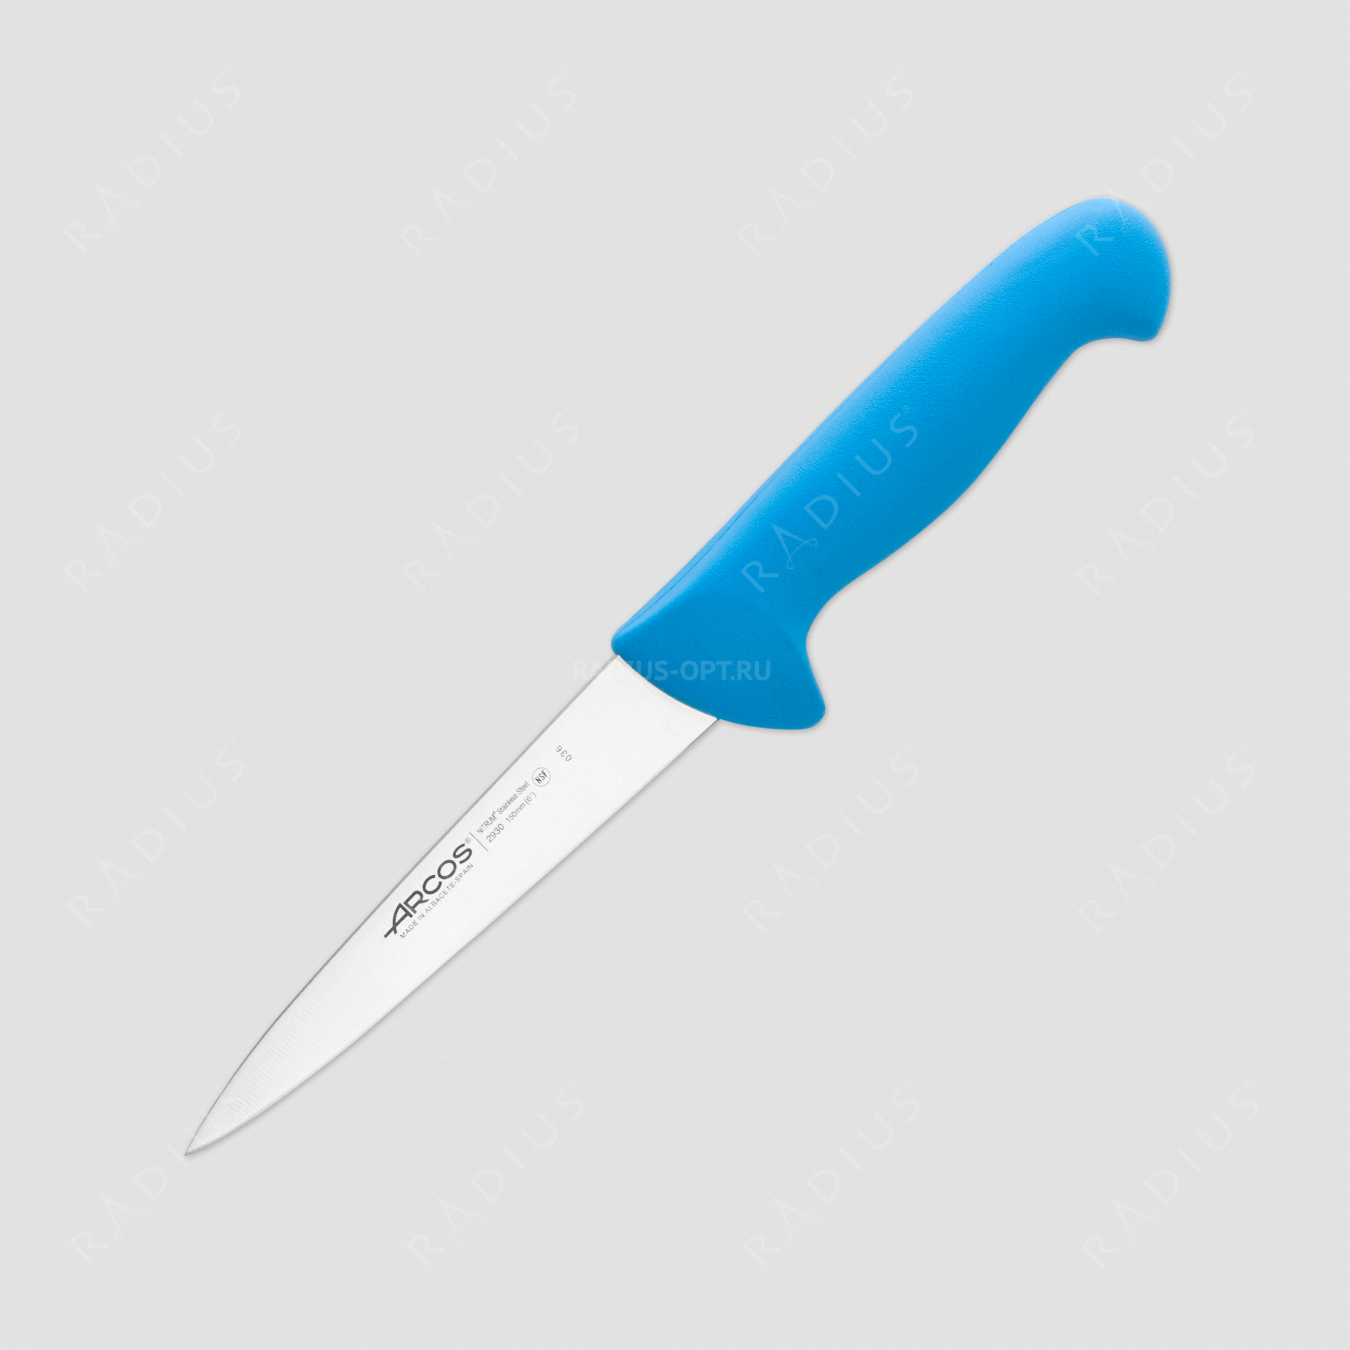 Нож кухонный для мяса 15 см, рукоять голубая, серия 2900, ARCOS, Испания